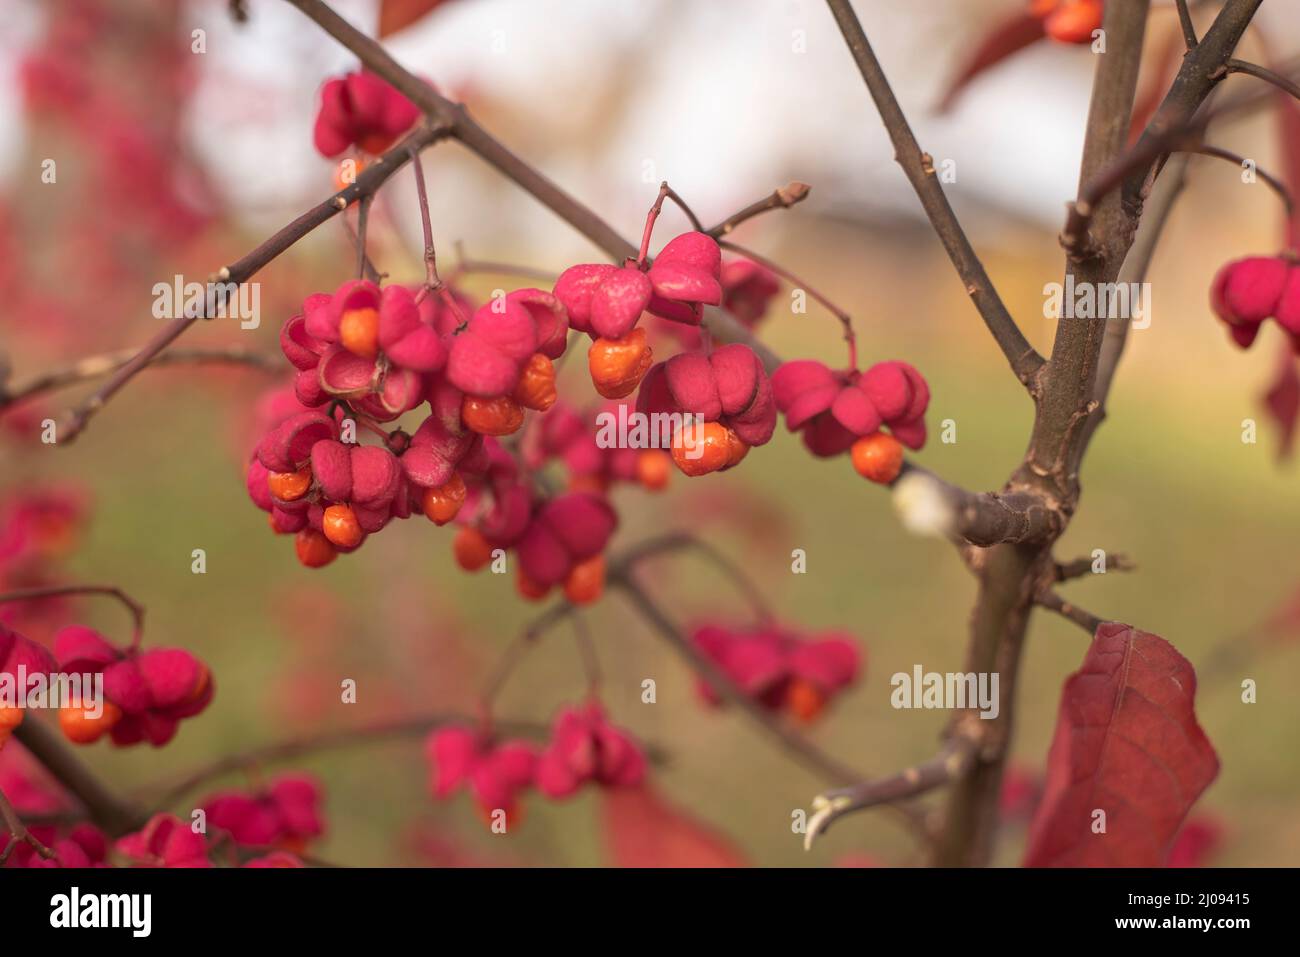 primer plano de las ramitas de un árbol de huso en otoño con flores rosadas y semillas de color naranja Foto de stock